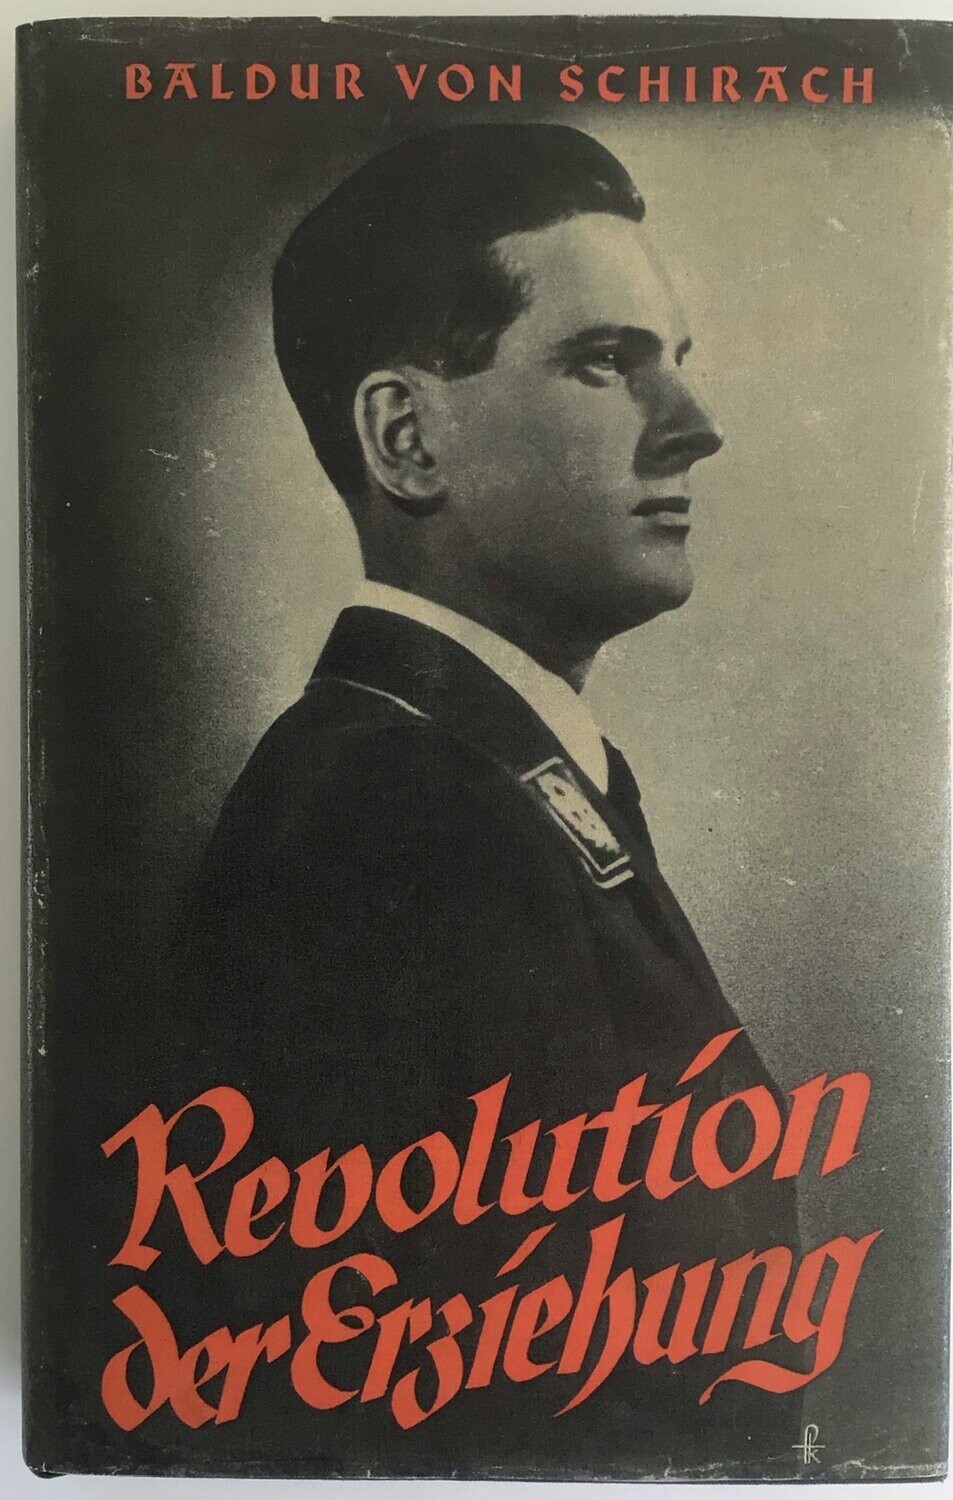 von Schirach: Revolution der Erziehung - Ganzleinenausgabe (2. Auflage) aus dem Jahr 1939 mit Schutzumschlag (Kopie)